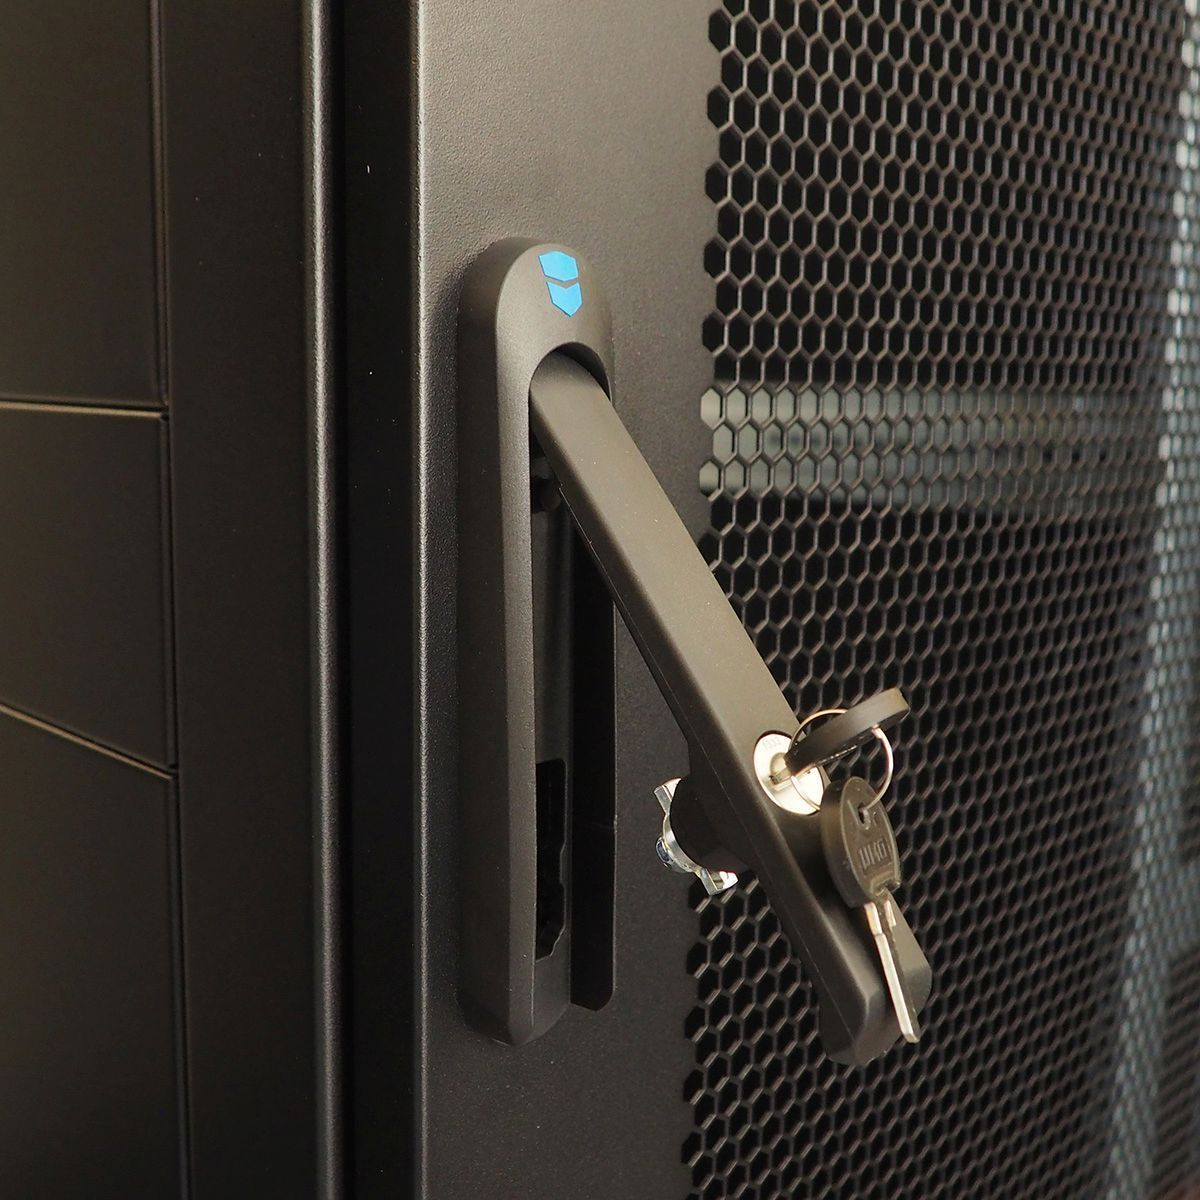 Шкаф серверный напольный 48U (800 × 1200) двойные перфорированные двери 2 шт.